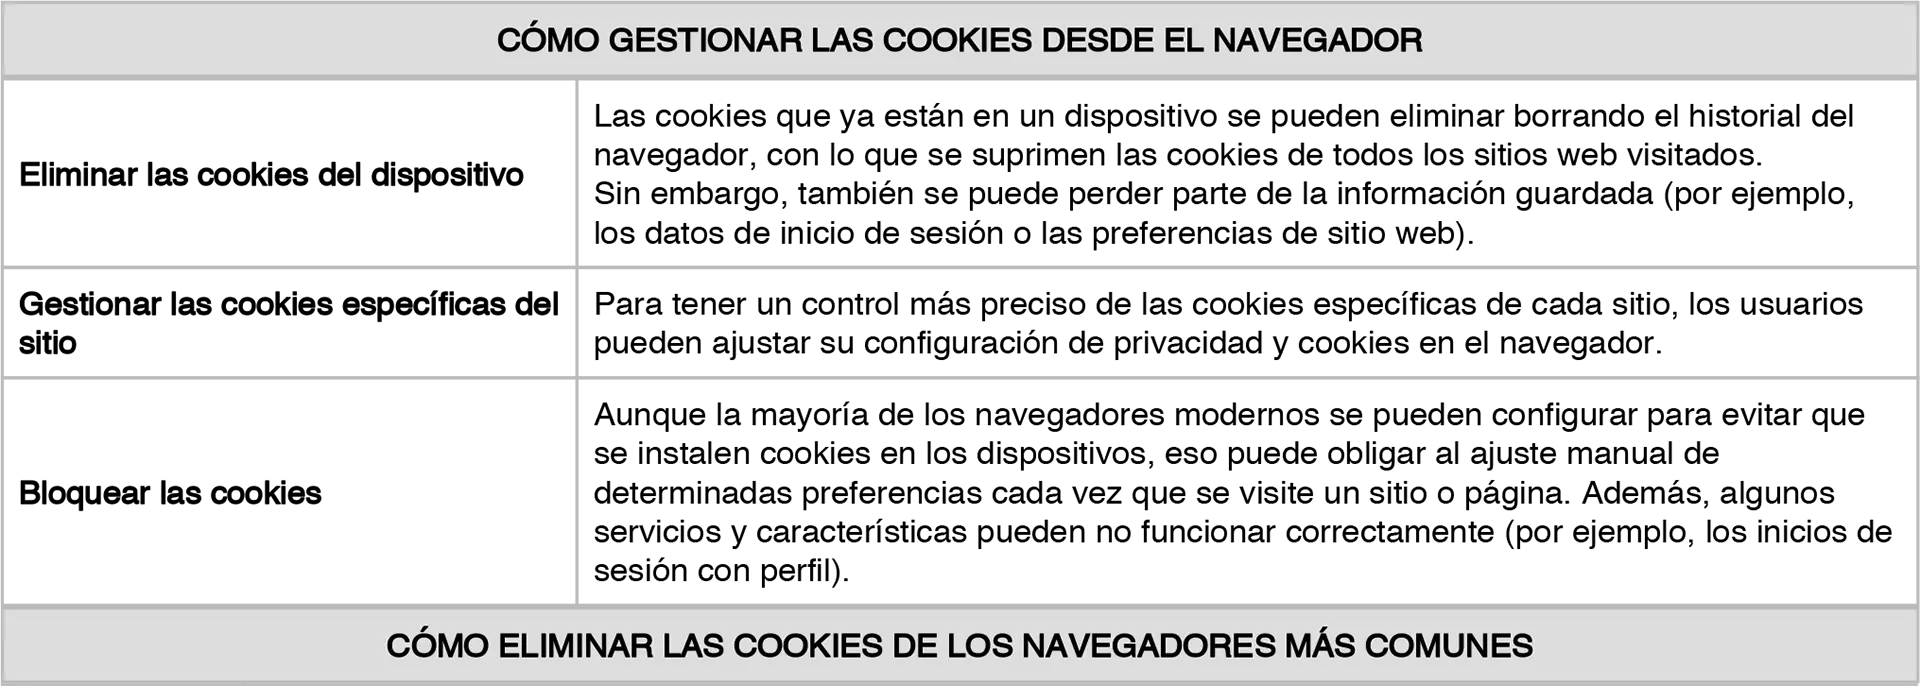 Gestionar cookies desde el navegador